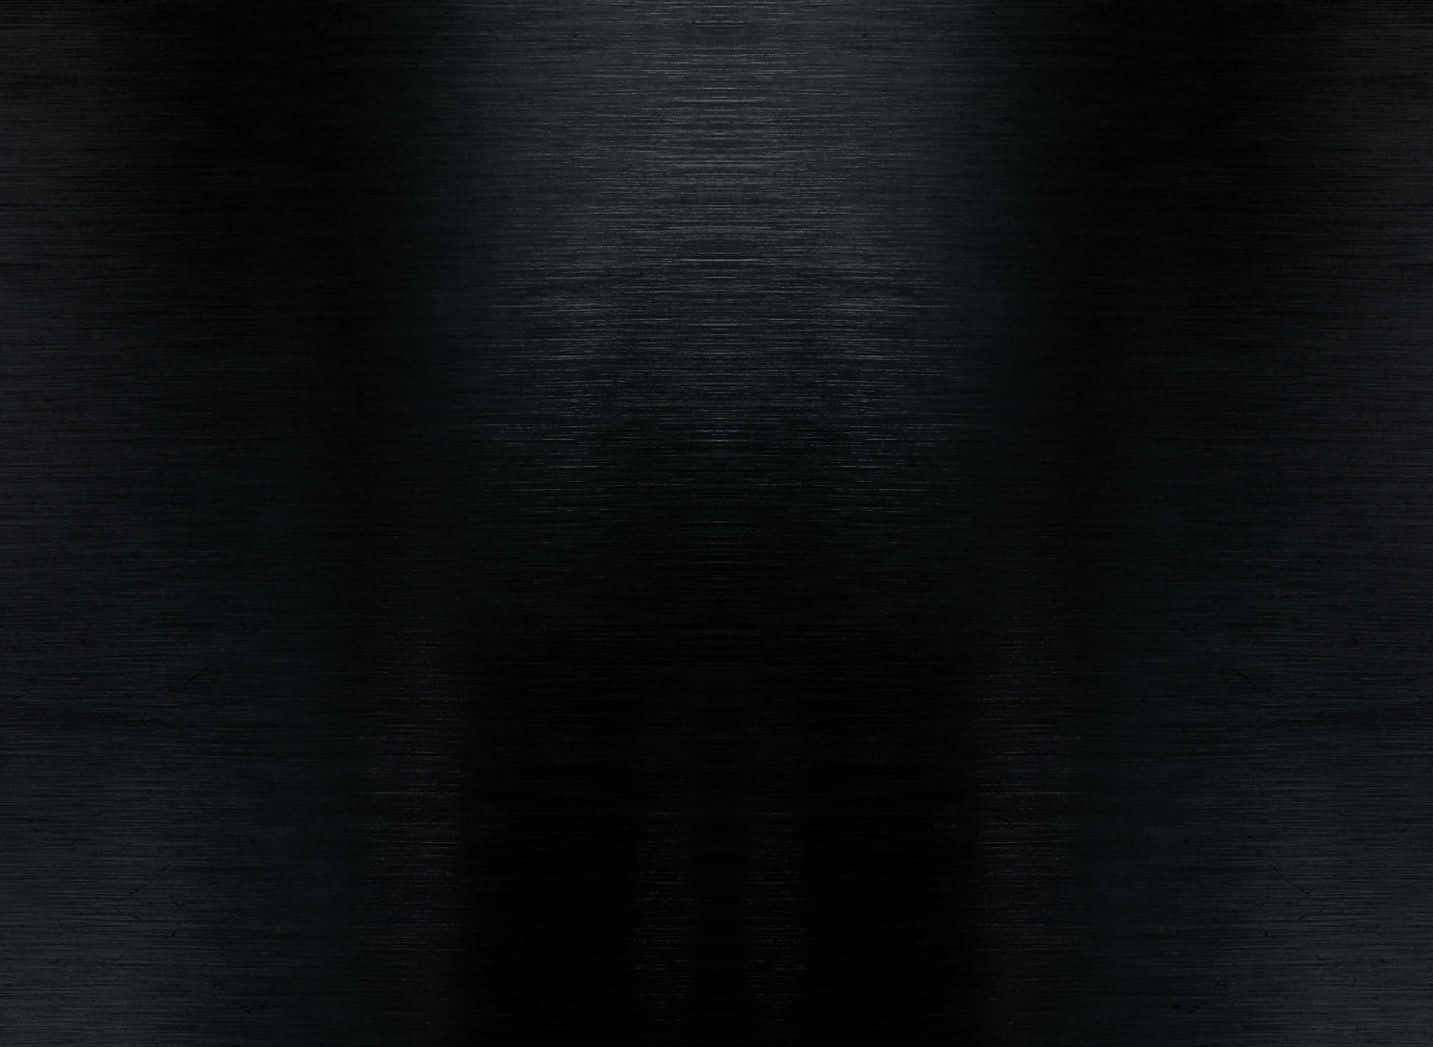 100+] Black Shiny Backgrounds